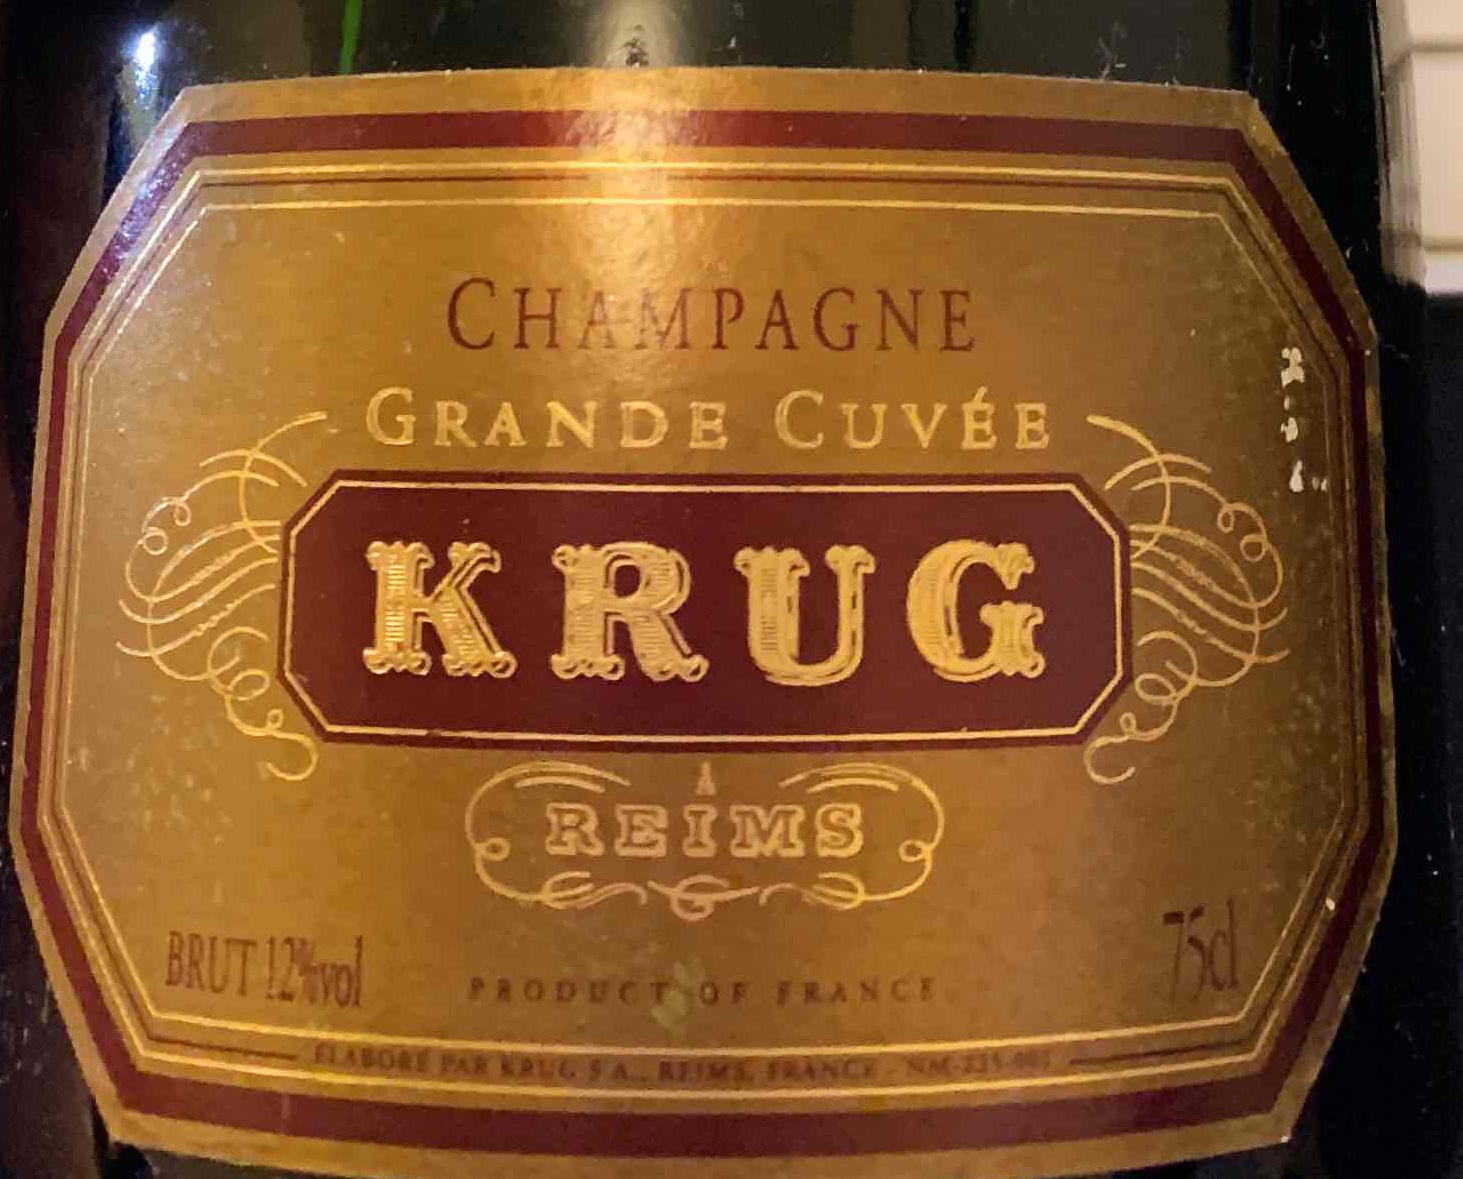 Champagne Krug Grande Cuvee Brut, Champagne, France-库克香槟葡萄酒 